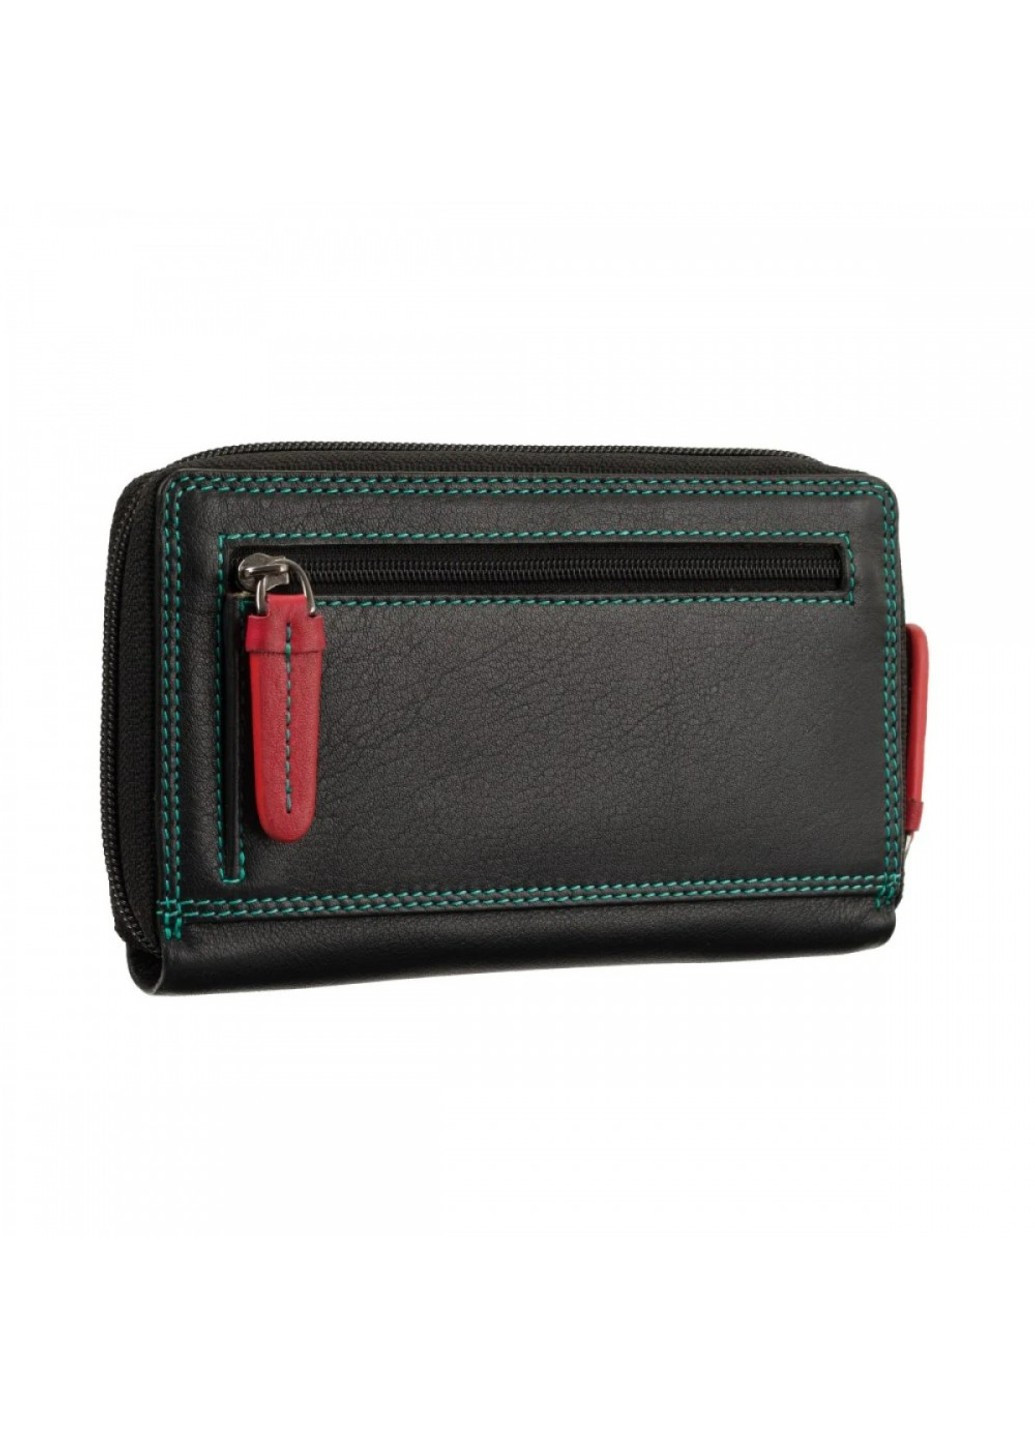 Женский кожаный кошелек с RFID защитой RB98 Aruba (Black/Rhumba) Visconti (276456855)